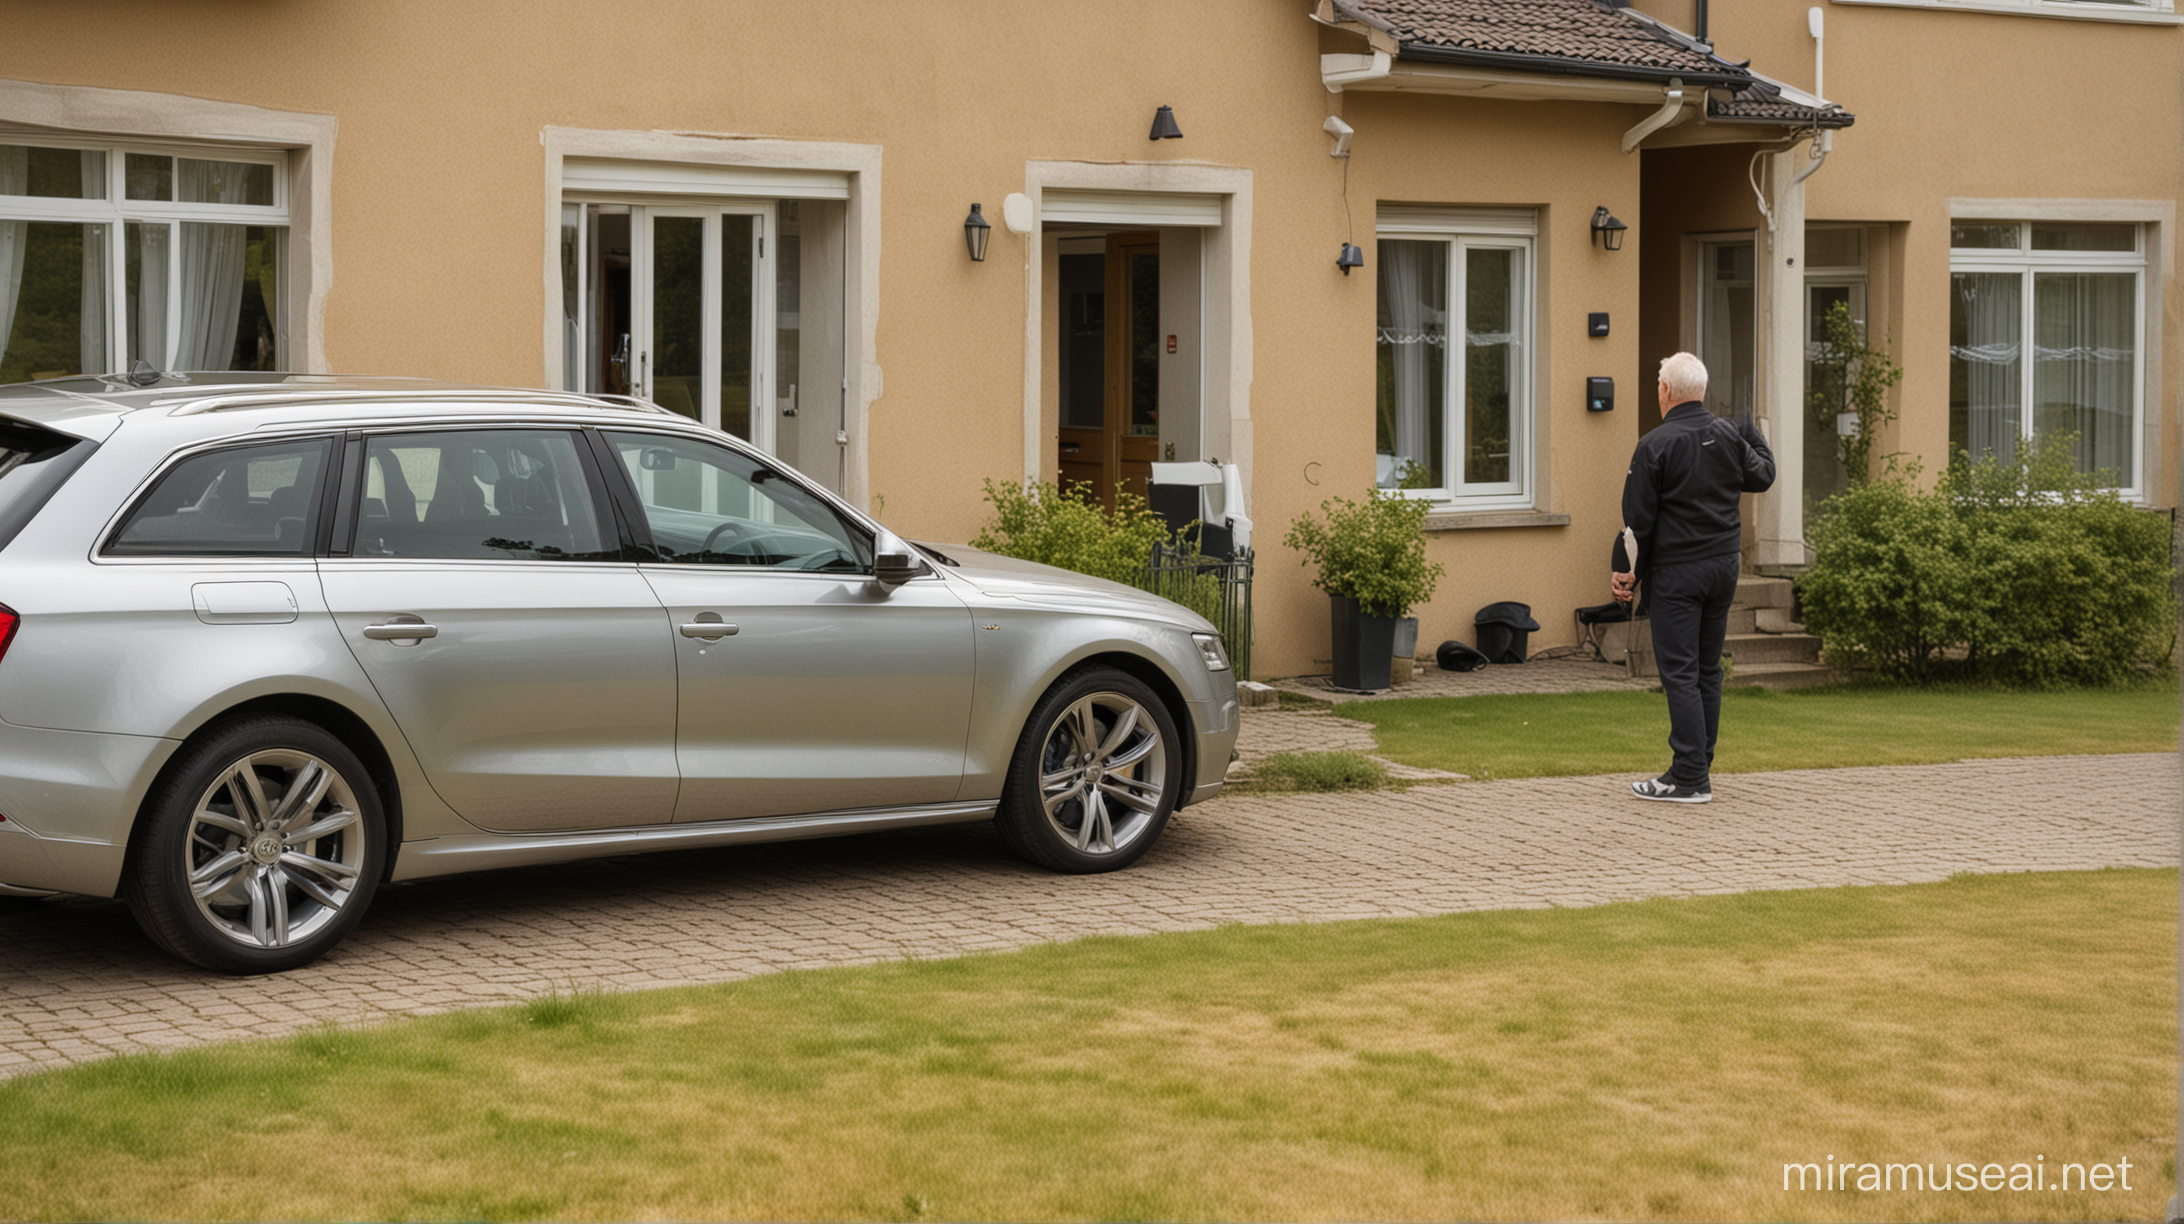 Omakotitalo Suomessa
Pihassa on yksi Audi henkilöauto
häirikkö markkinoija nuori mies on vanhusten ovella
soittaa ovikelloa
 